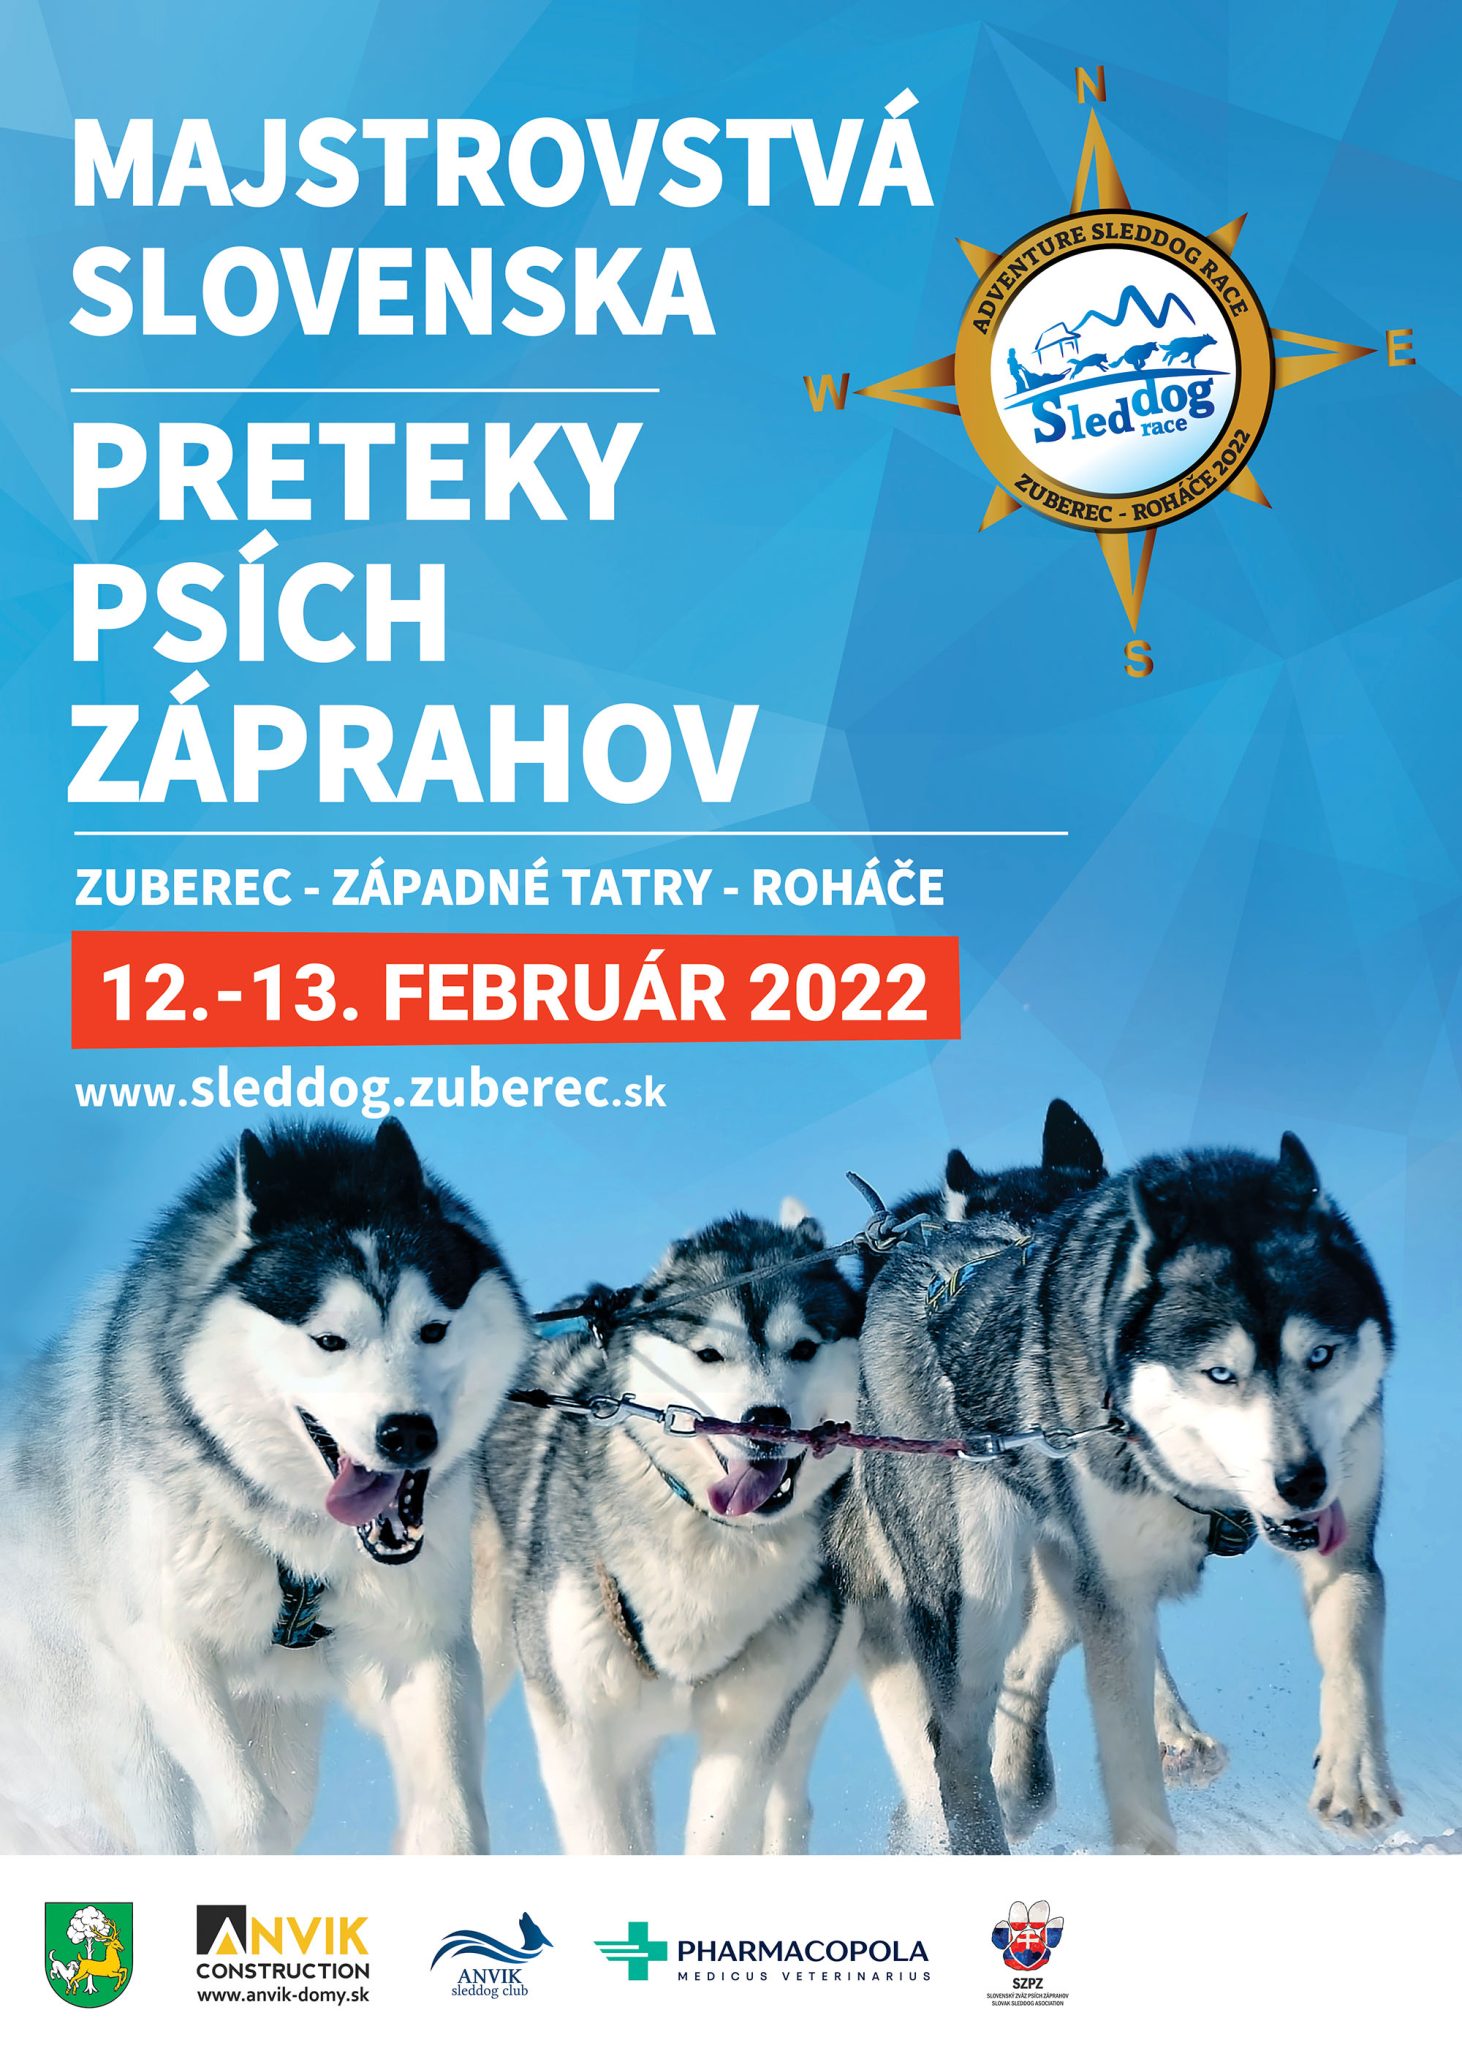 Preteky psích záprahov 2022 Zuberec - Majstrovstvá Slovenska